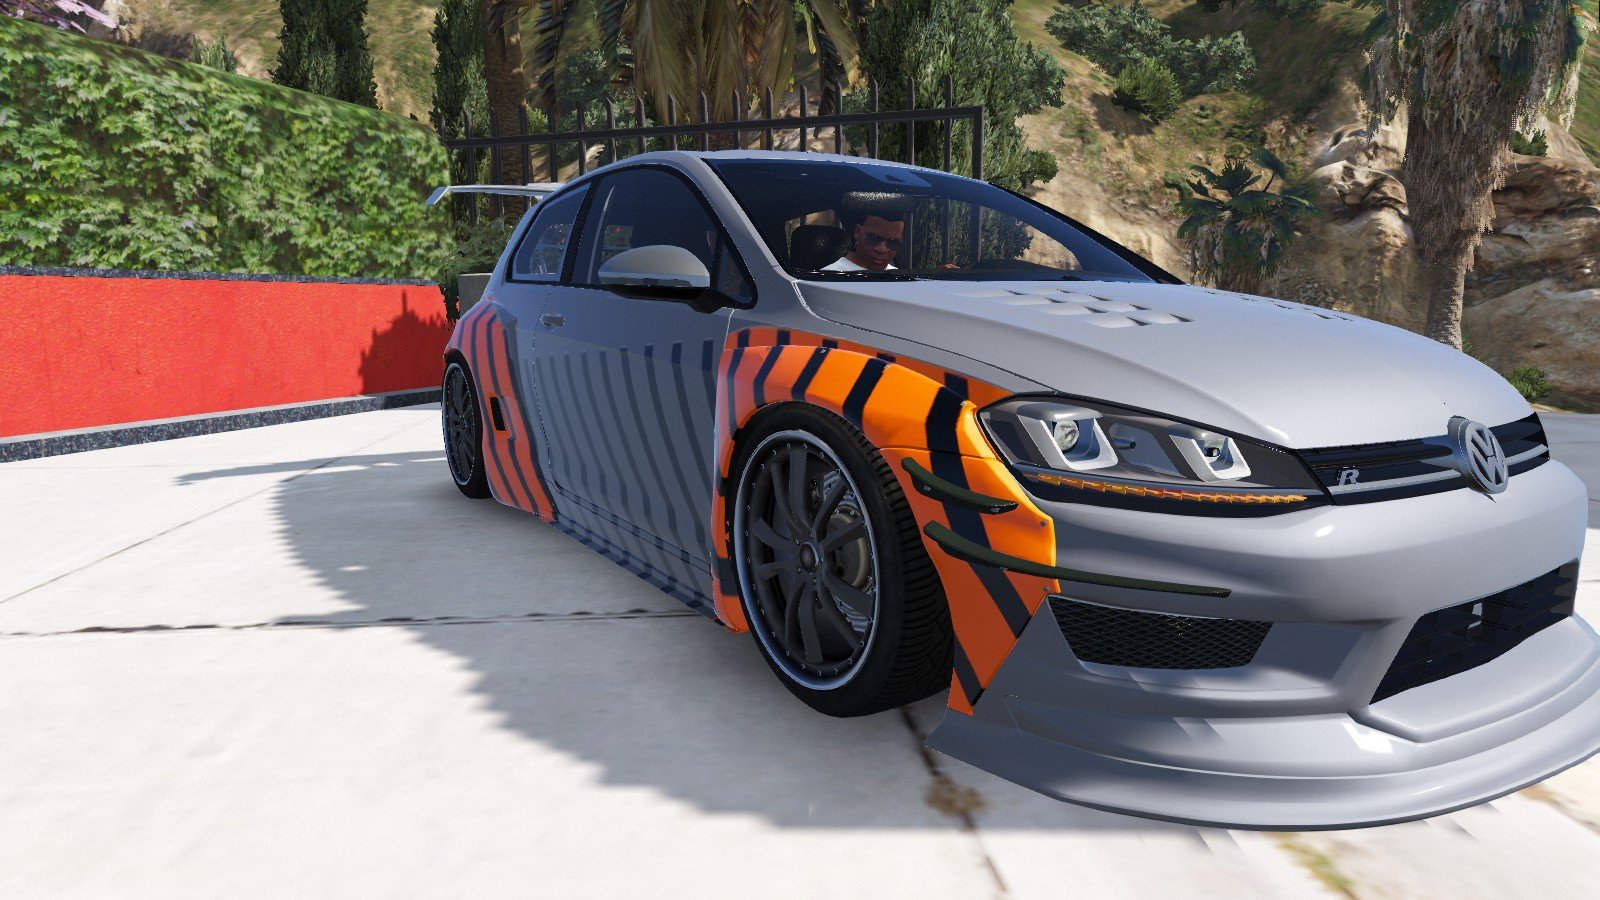 VW Golf GTI, Supergolf Projekt, JP Performance